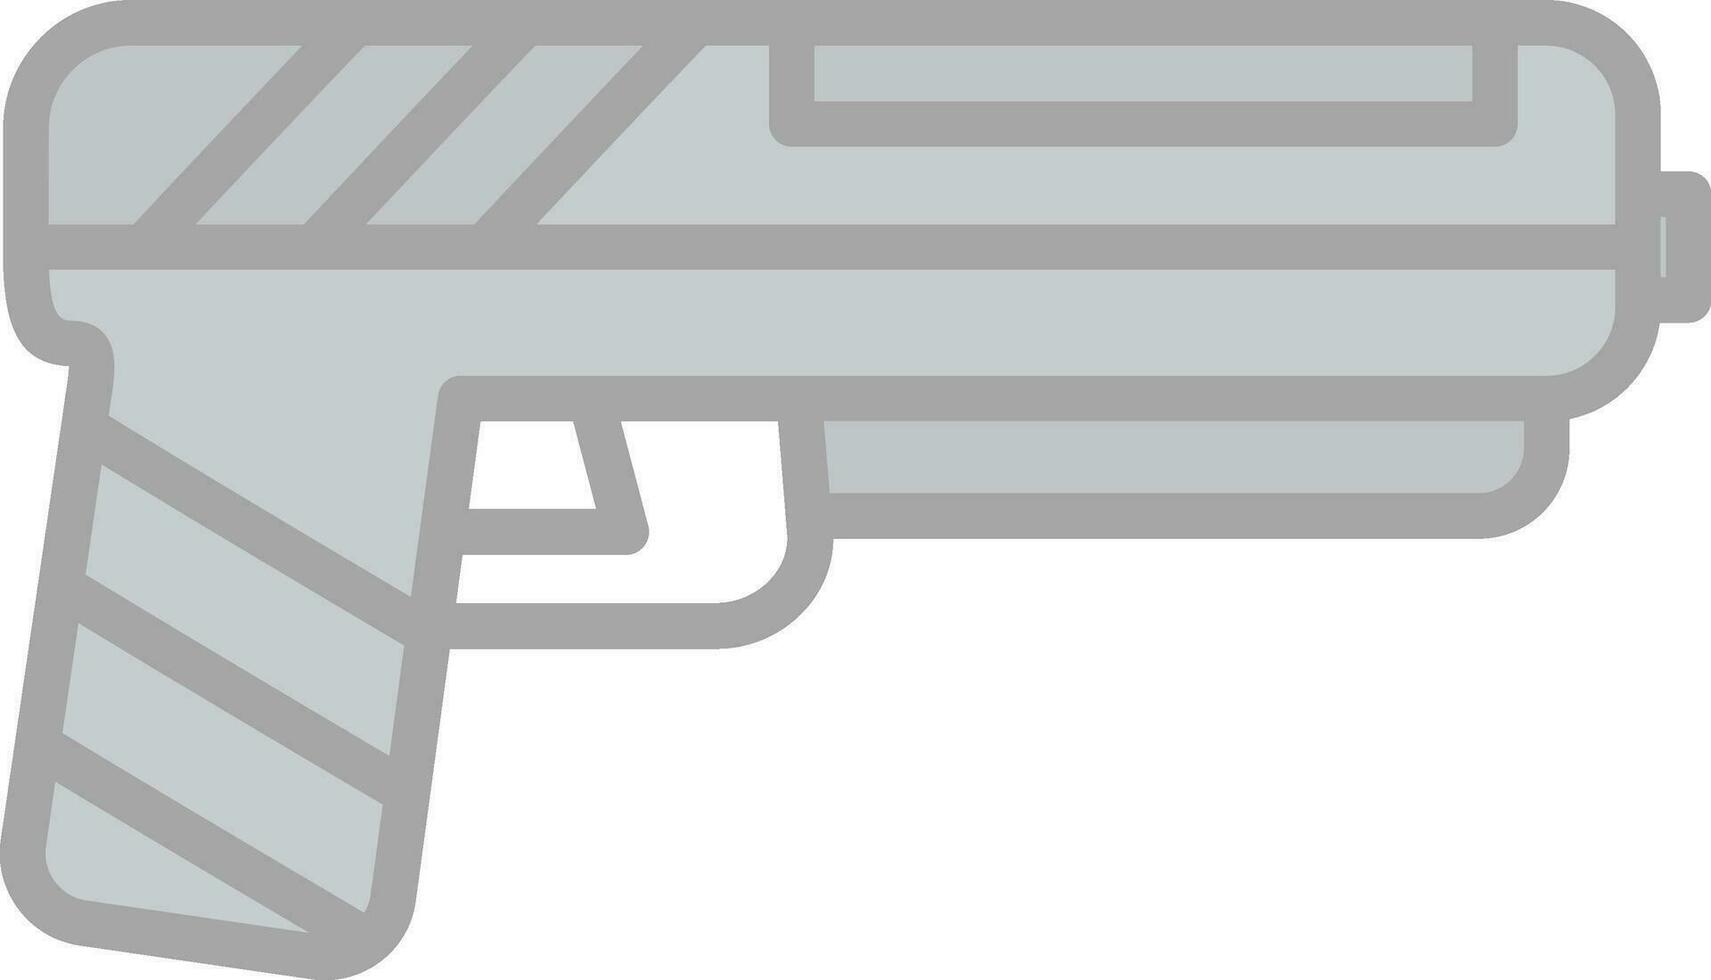 pistolet vecteur icône conception